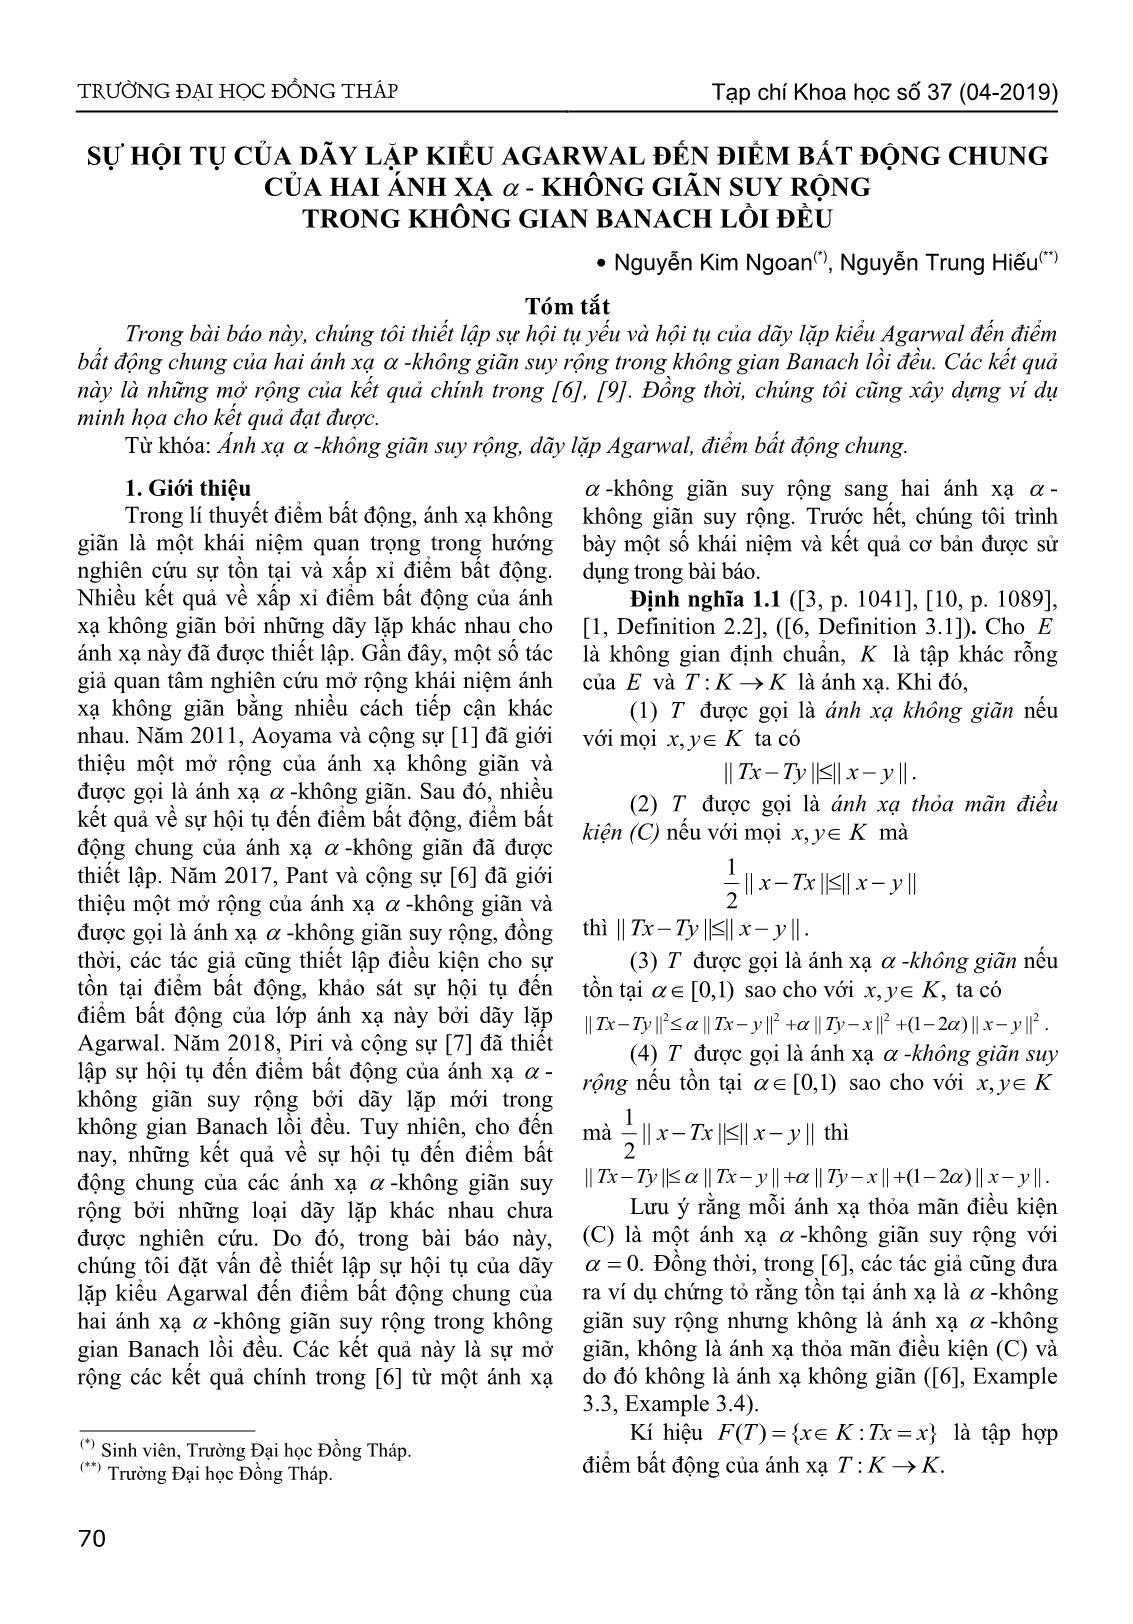 Sự hội tụ của dãy lặp kiểu Agarwal đến điểm bất động chung của hai ánh xạ - Không giãn suy rộng trong không gian Banach lồi đều trang 1